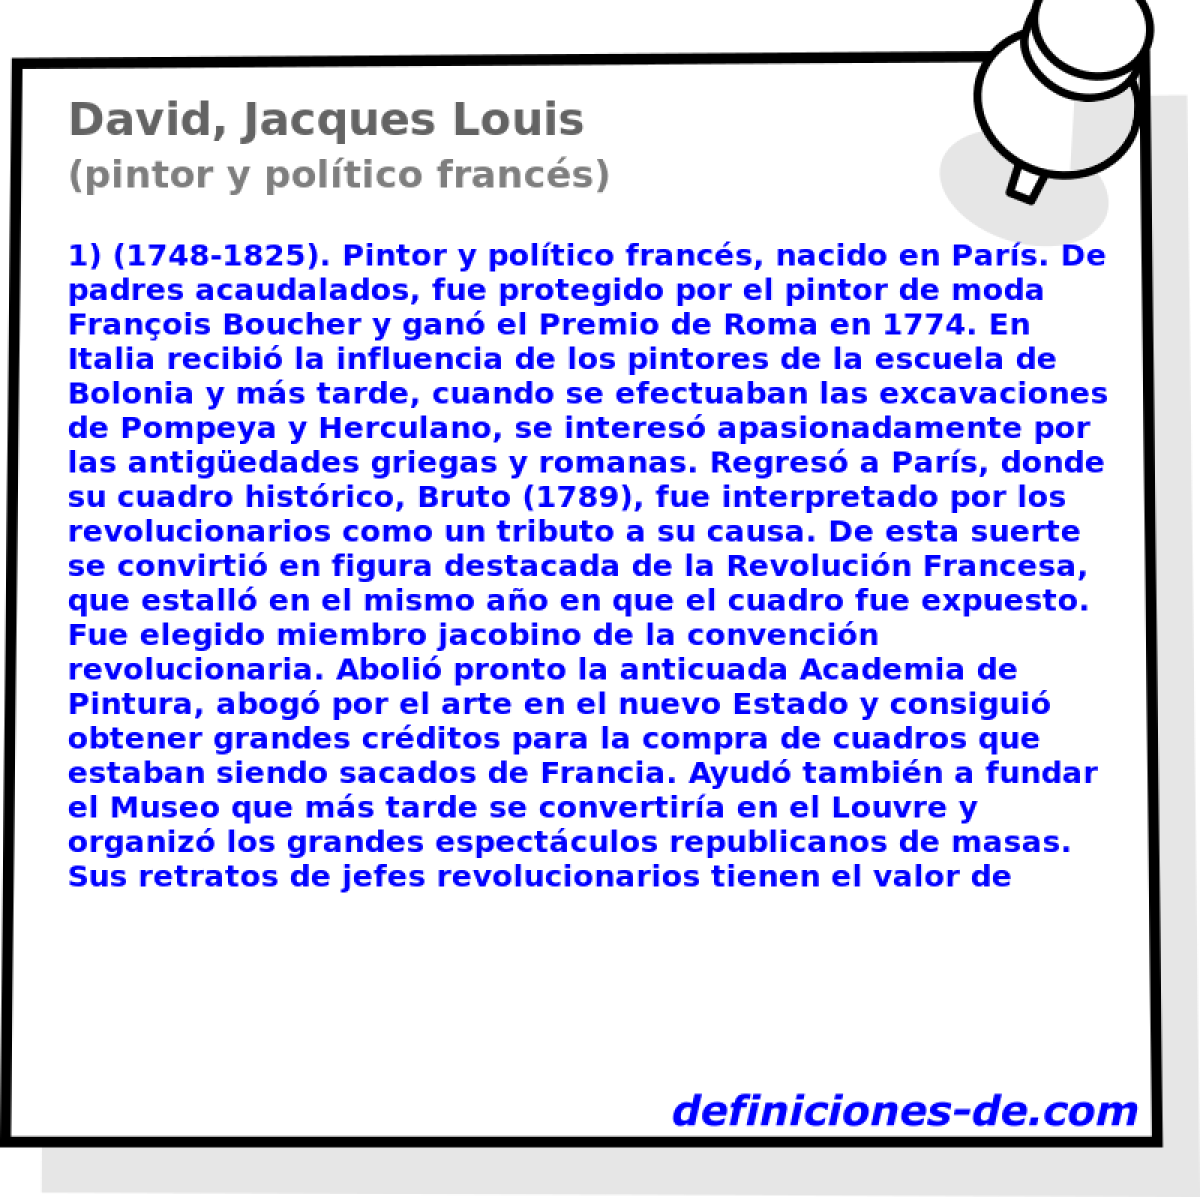 David, Jacques Louis (pintor y poltico francs)